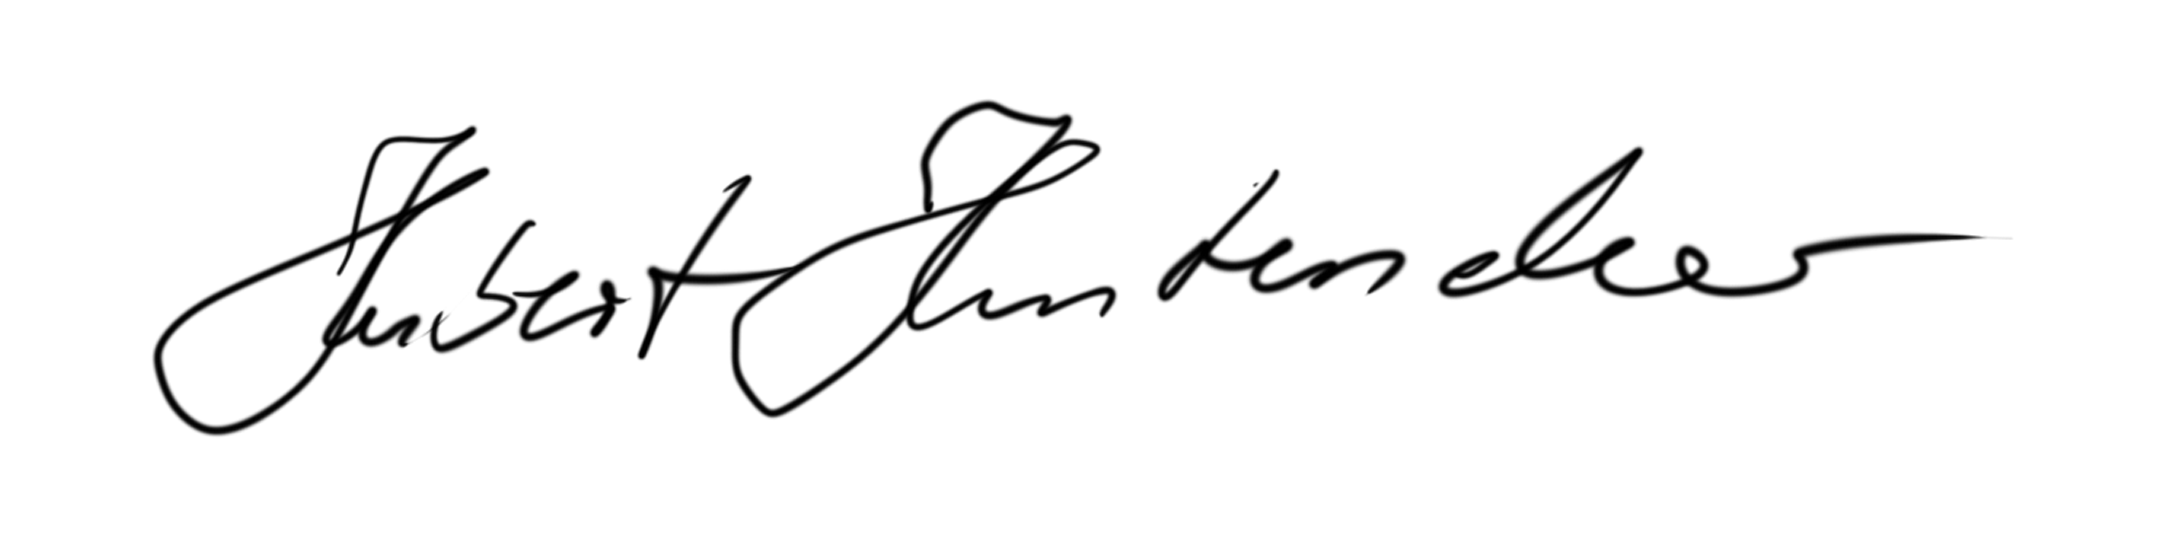 Unterschrift Hubert Hinterseher